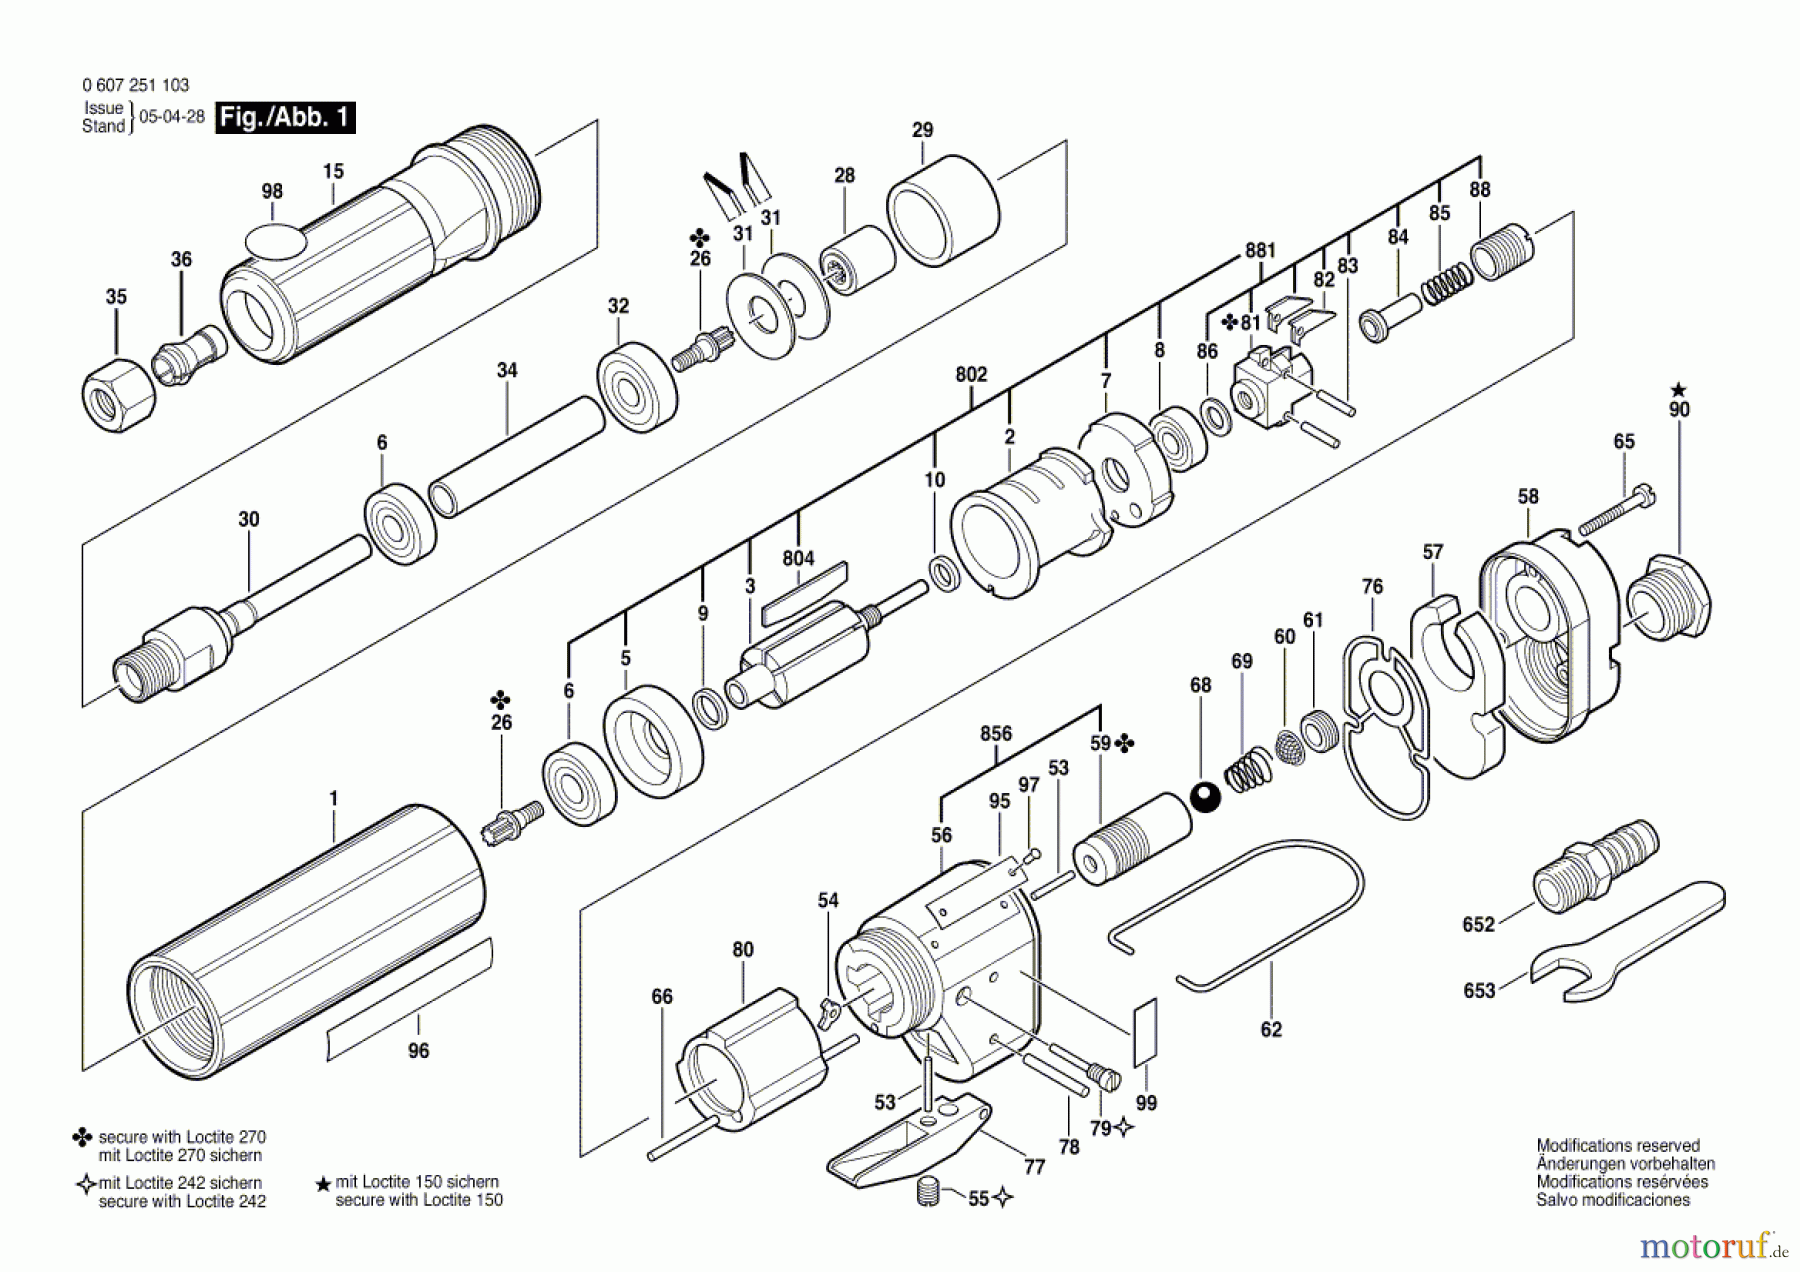  Bosch Werkzeug Pw-Geradschleifer 370 WATT-SERIE Seite 1